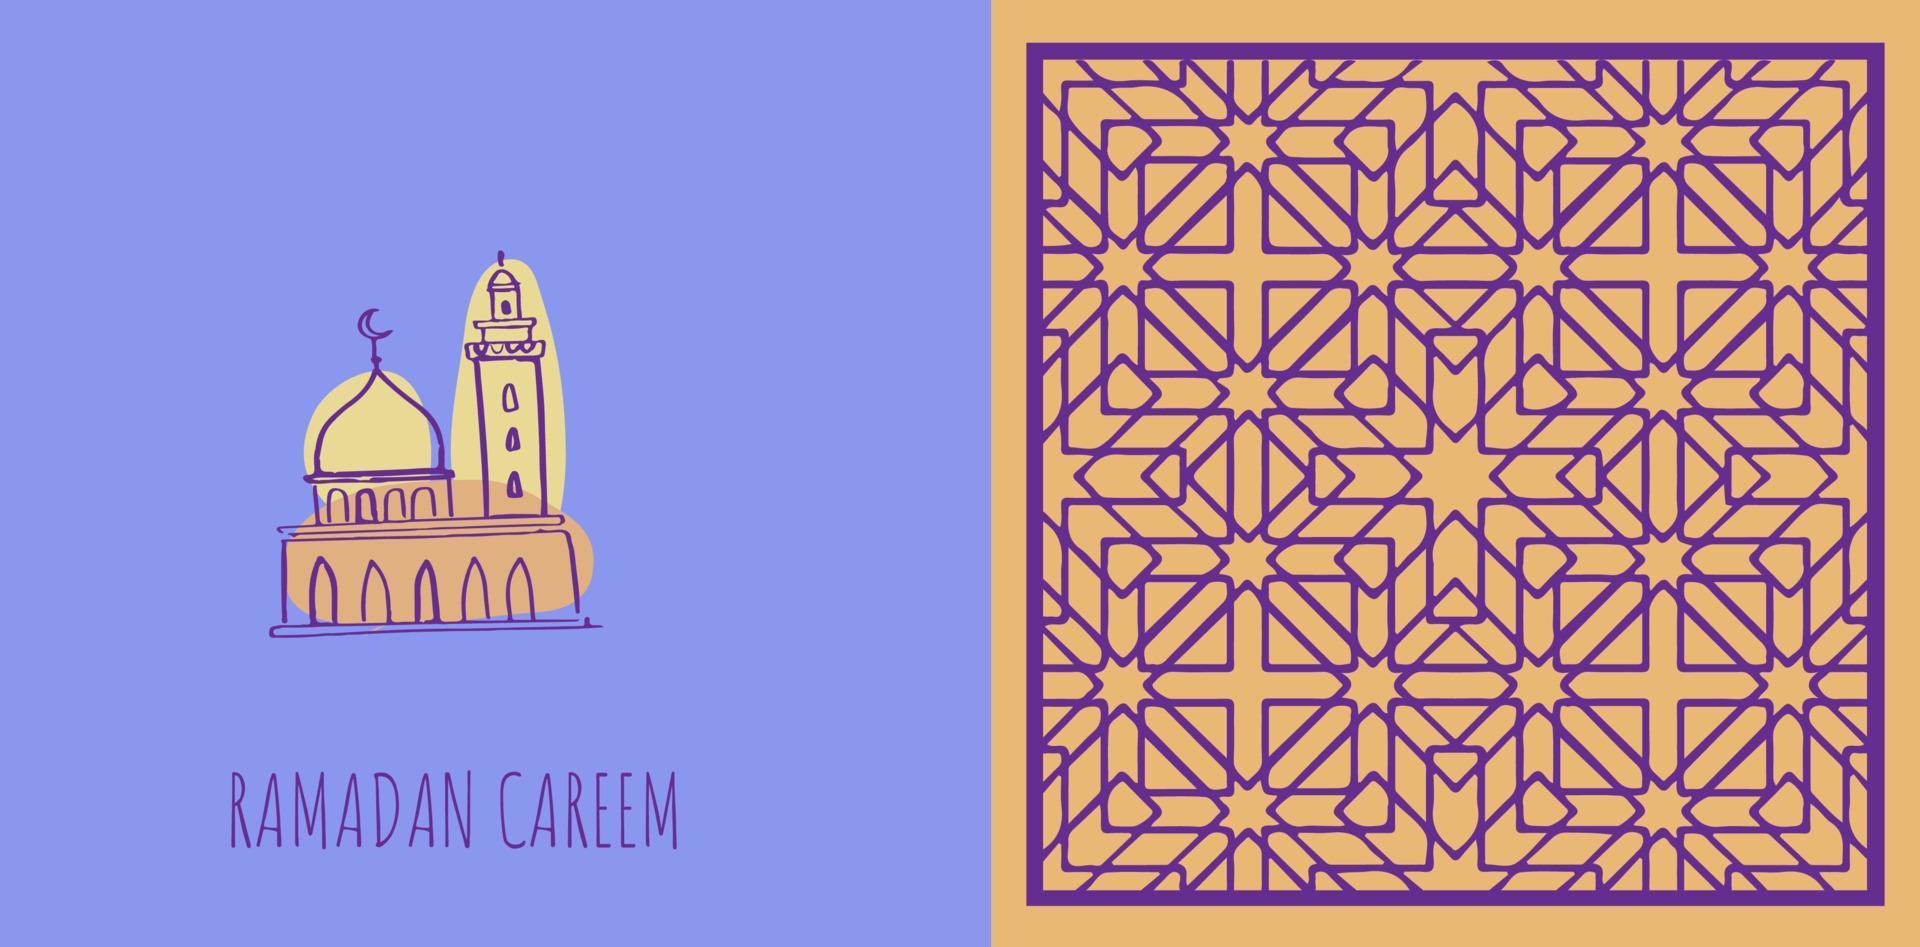 Ramadan Kareem. Islamic greeting card template Islamic Ornament vector